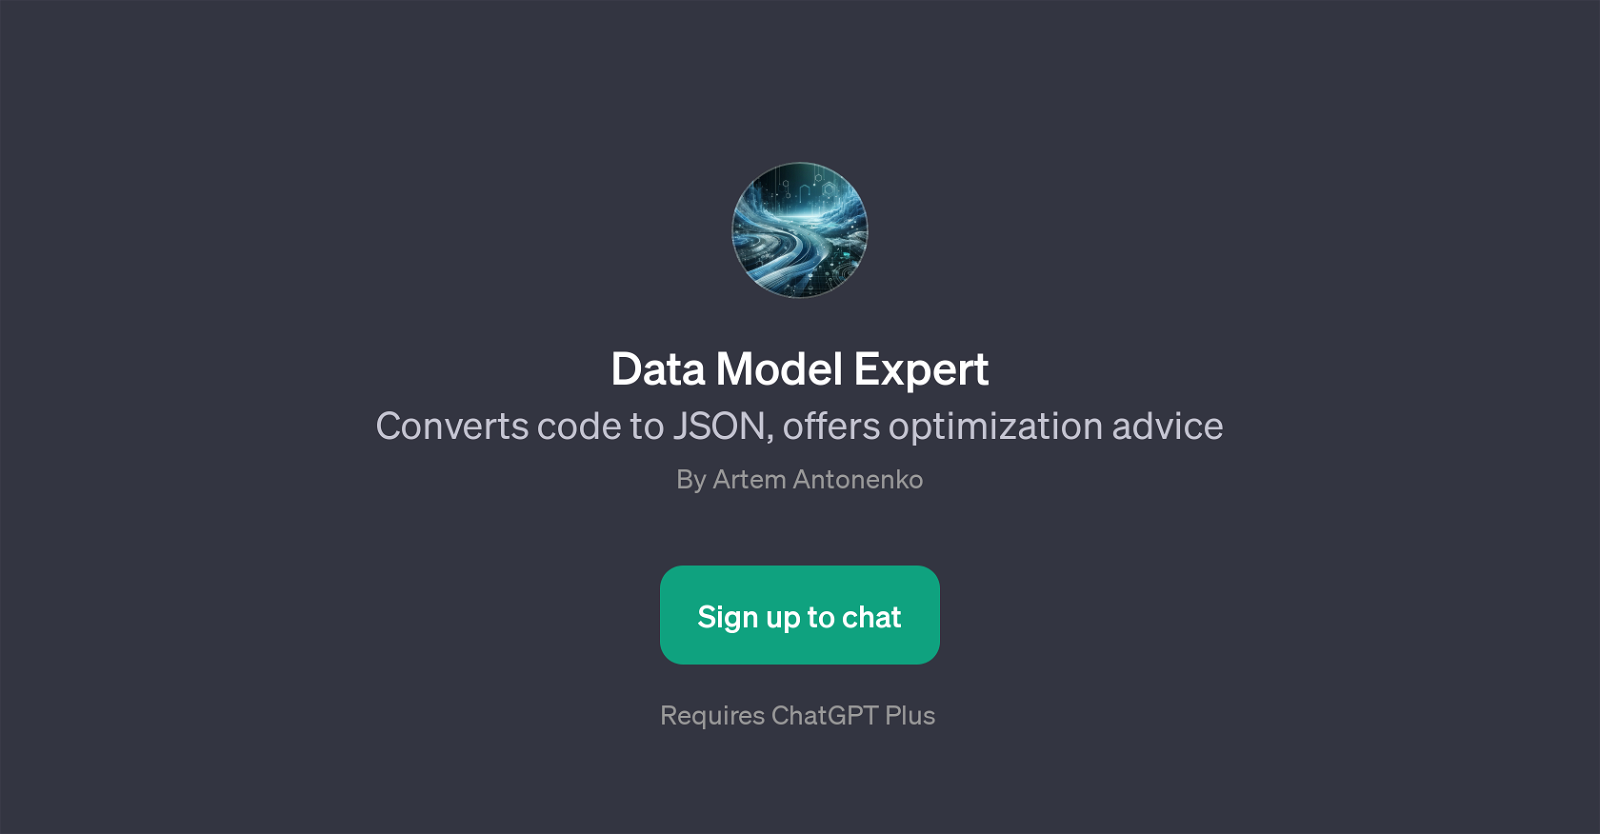 Data Model Expert website